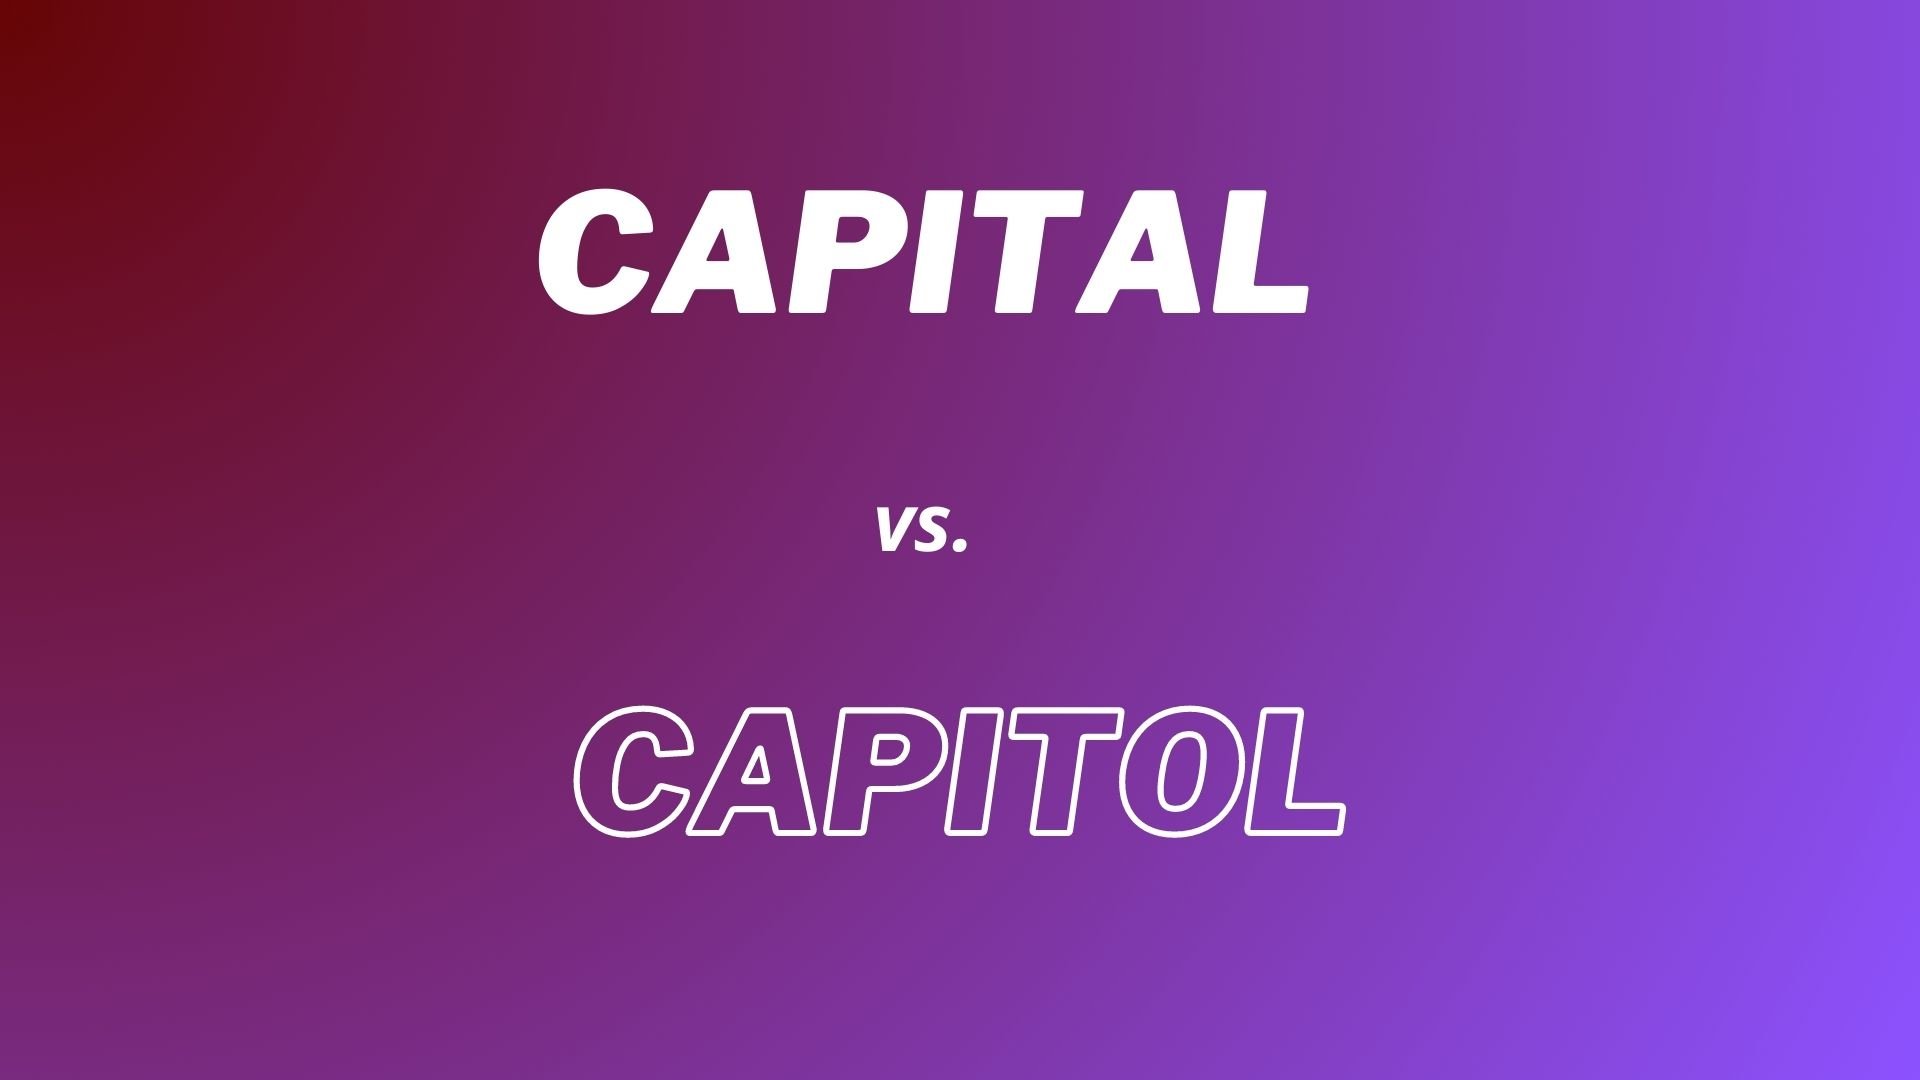 Explicando la diferencia entre las palabras "Capital" y "Capitol"